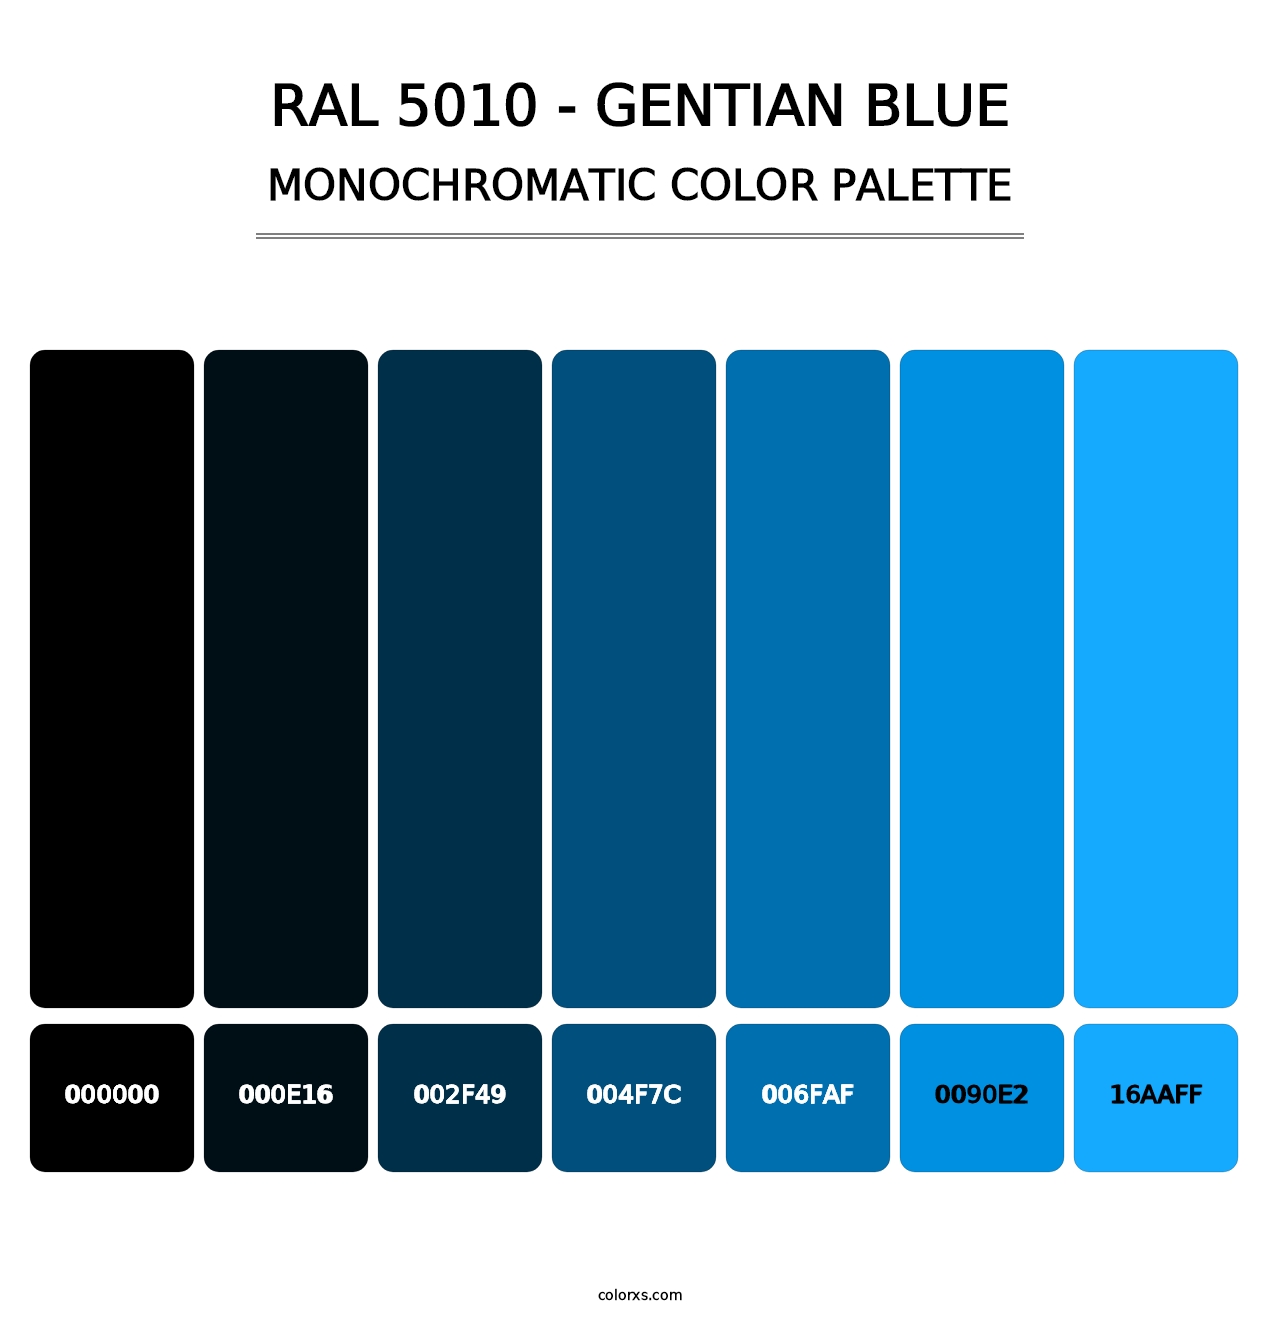 RAL 5010 - Gentian Blue - Monochromatic Color Palette